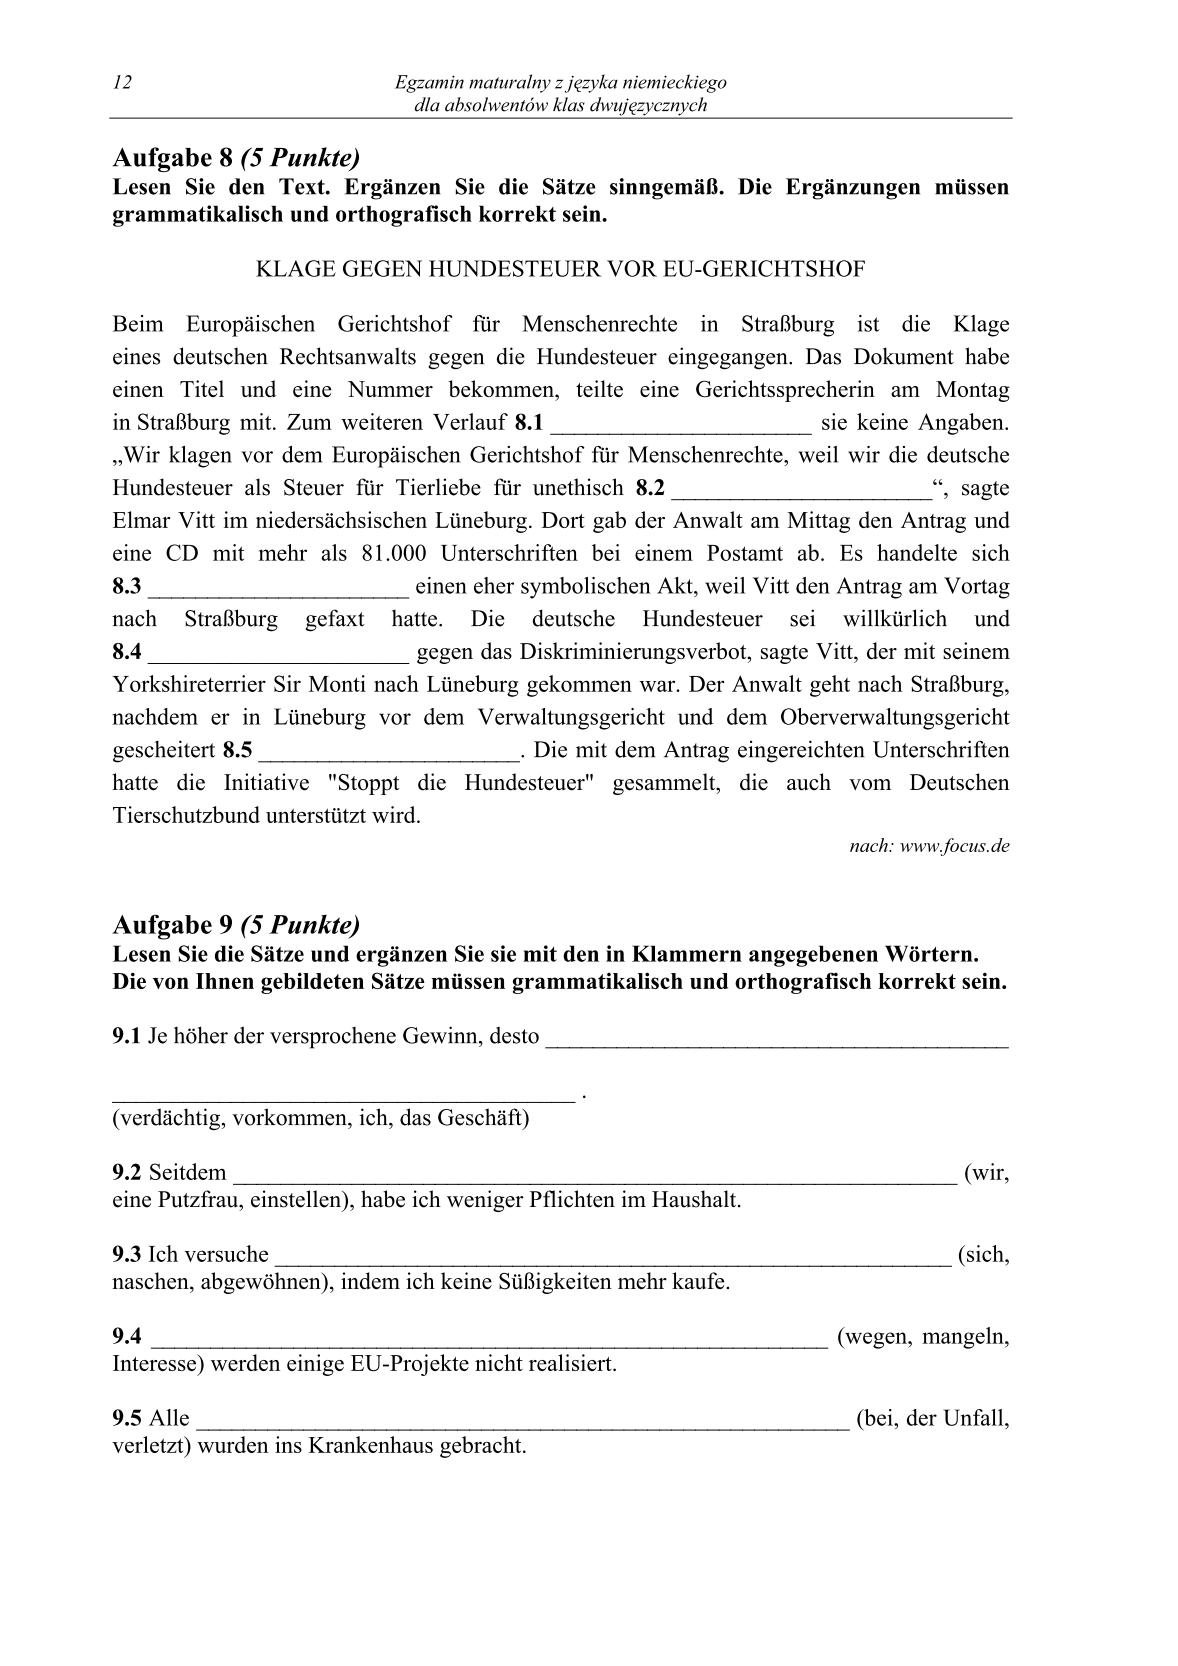 pytania-jezyk-niemiecki-dla-absolwentow-klas-dwujezycznych-matura-2014-str.12